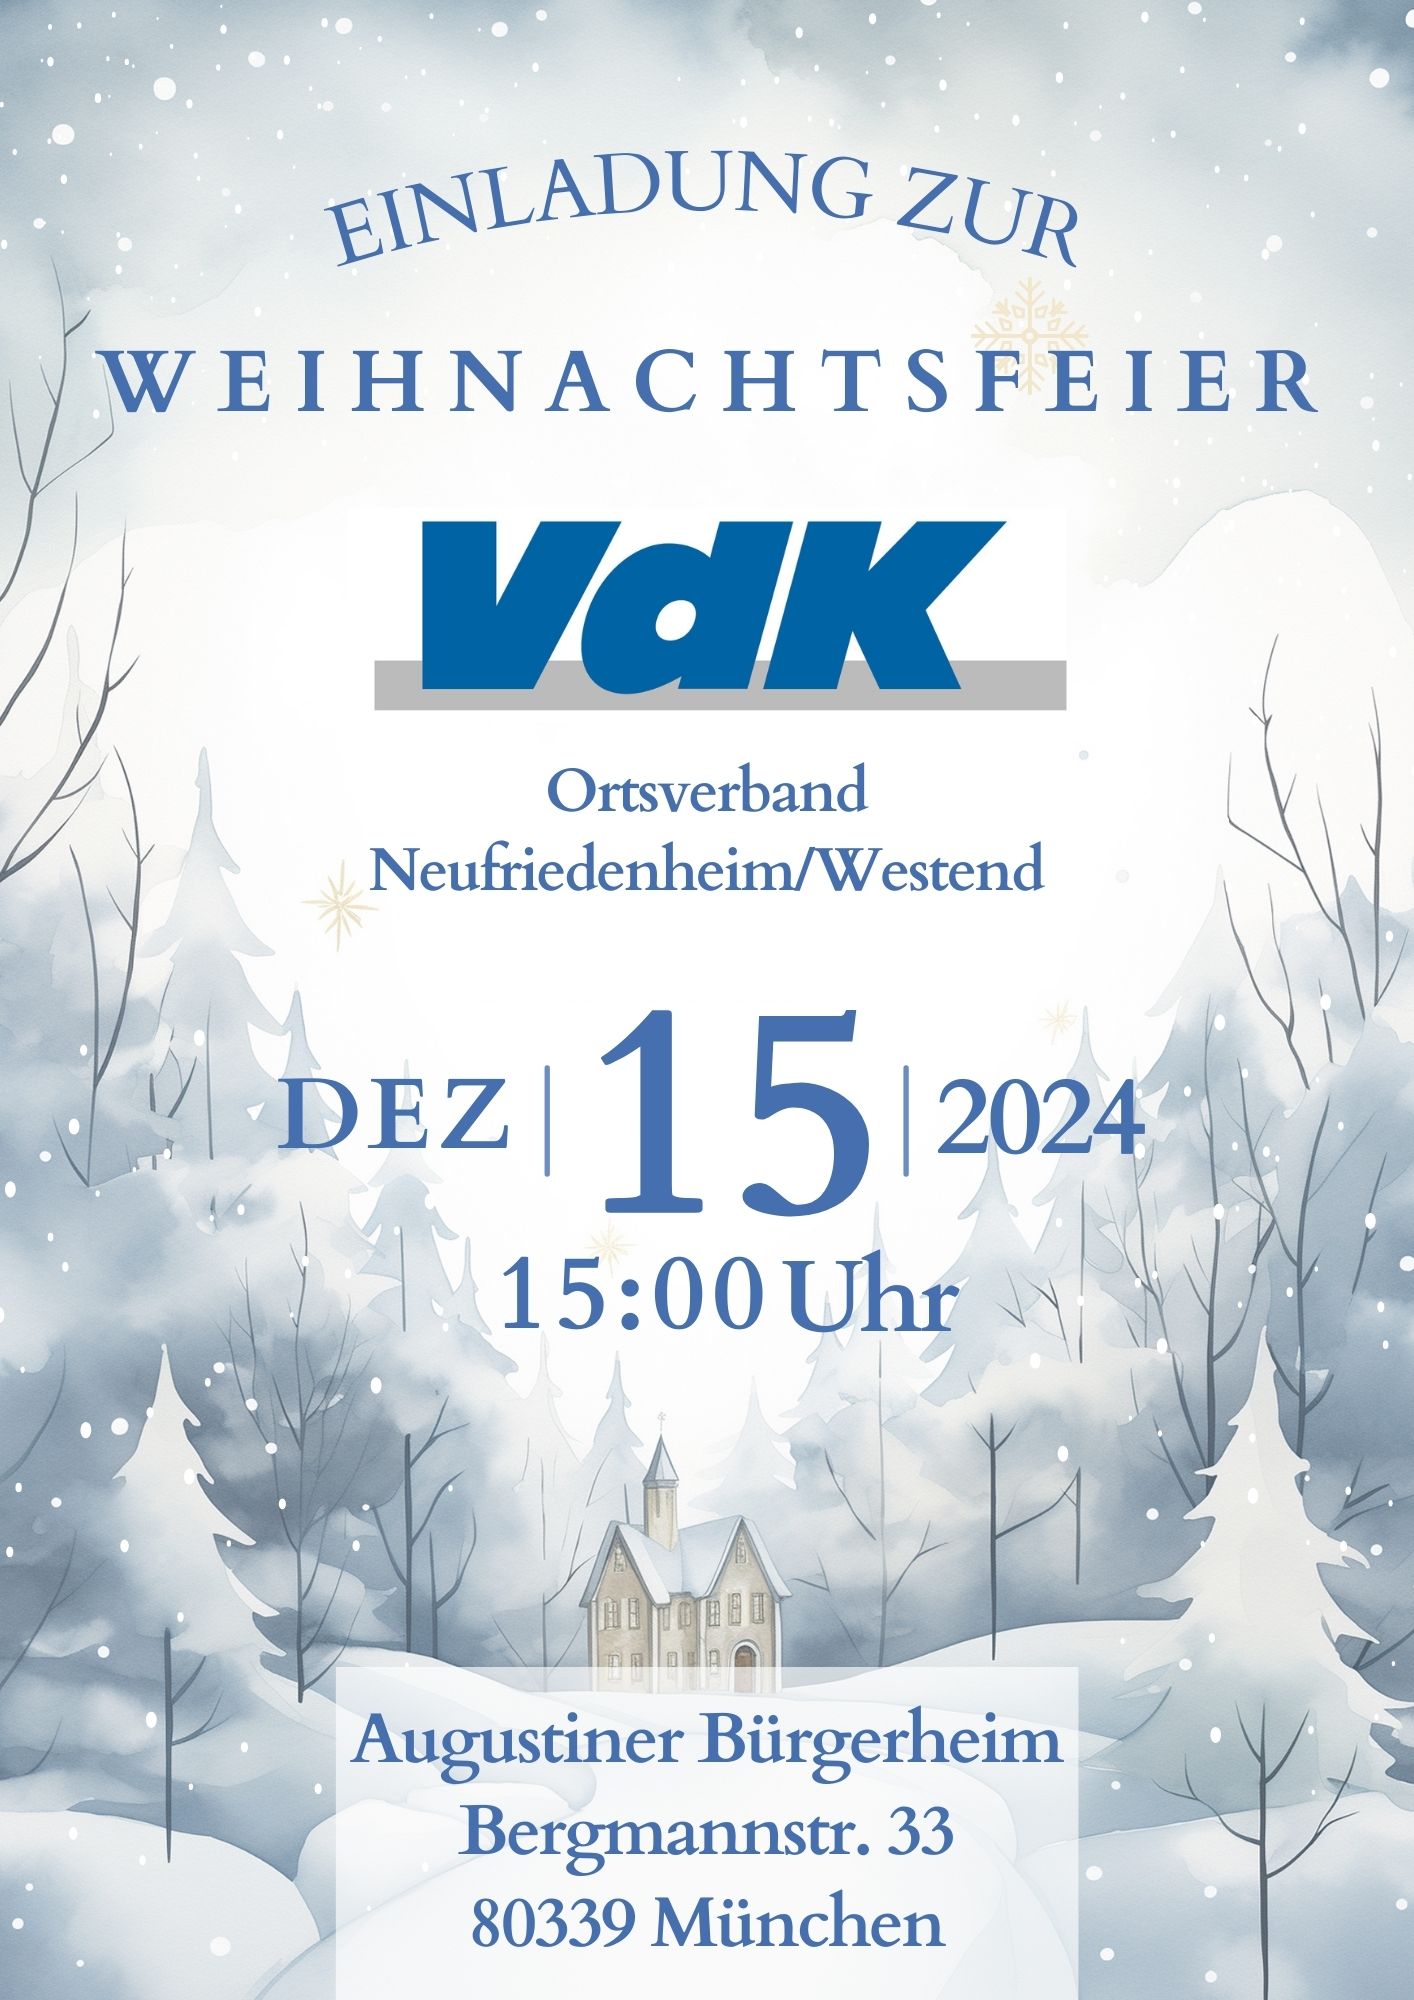 Bild zeigt Einladung zur Weihnachtsfeier am 15.12.2024 im Augustiner Bürgerheim